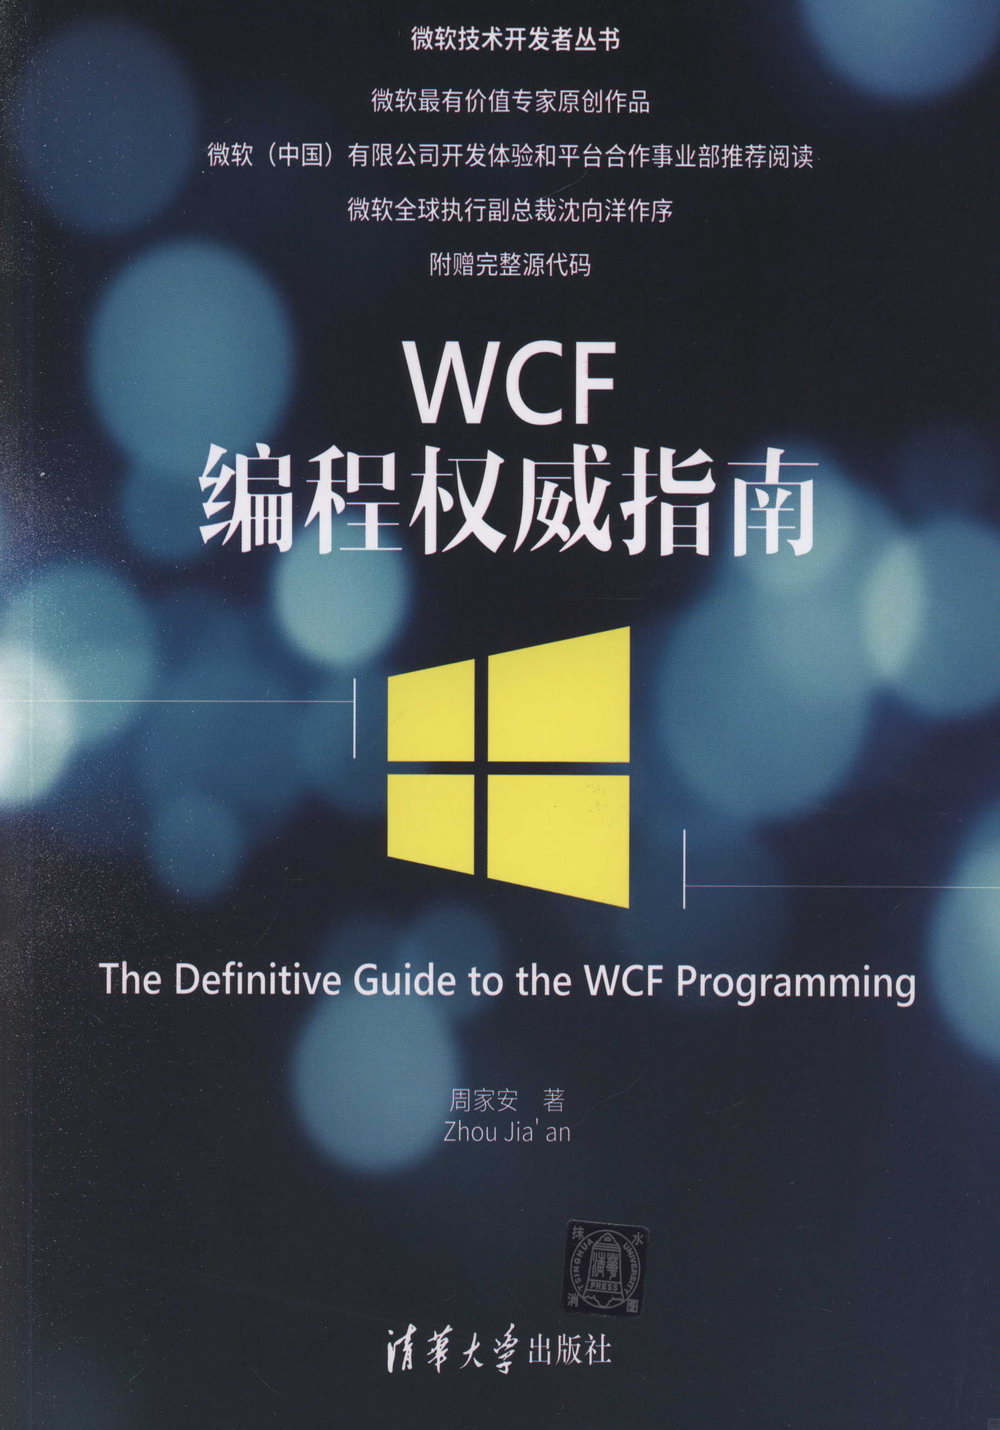 WCF編程權威指南